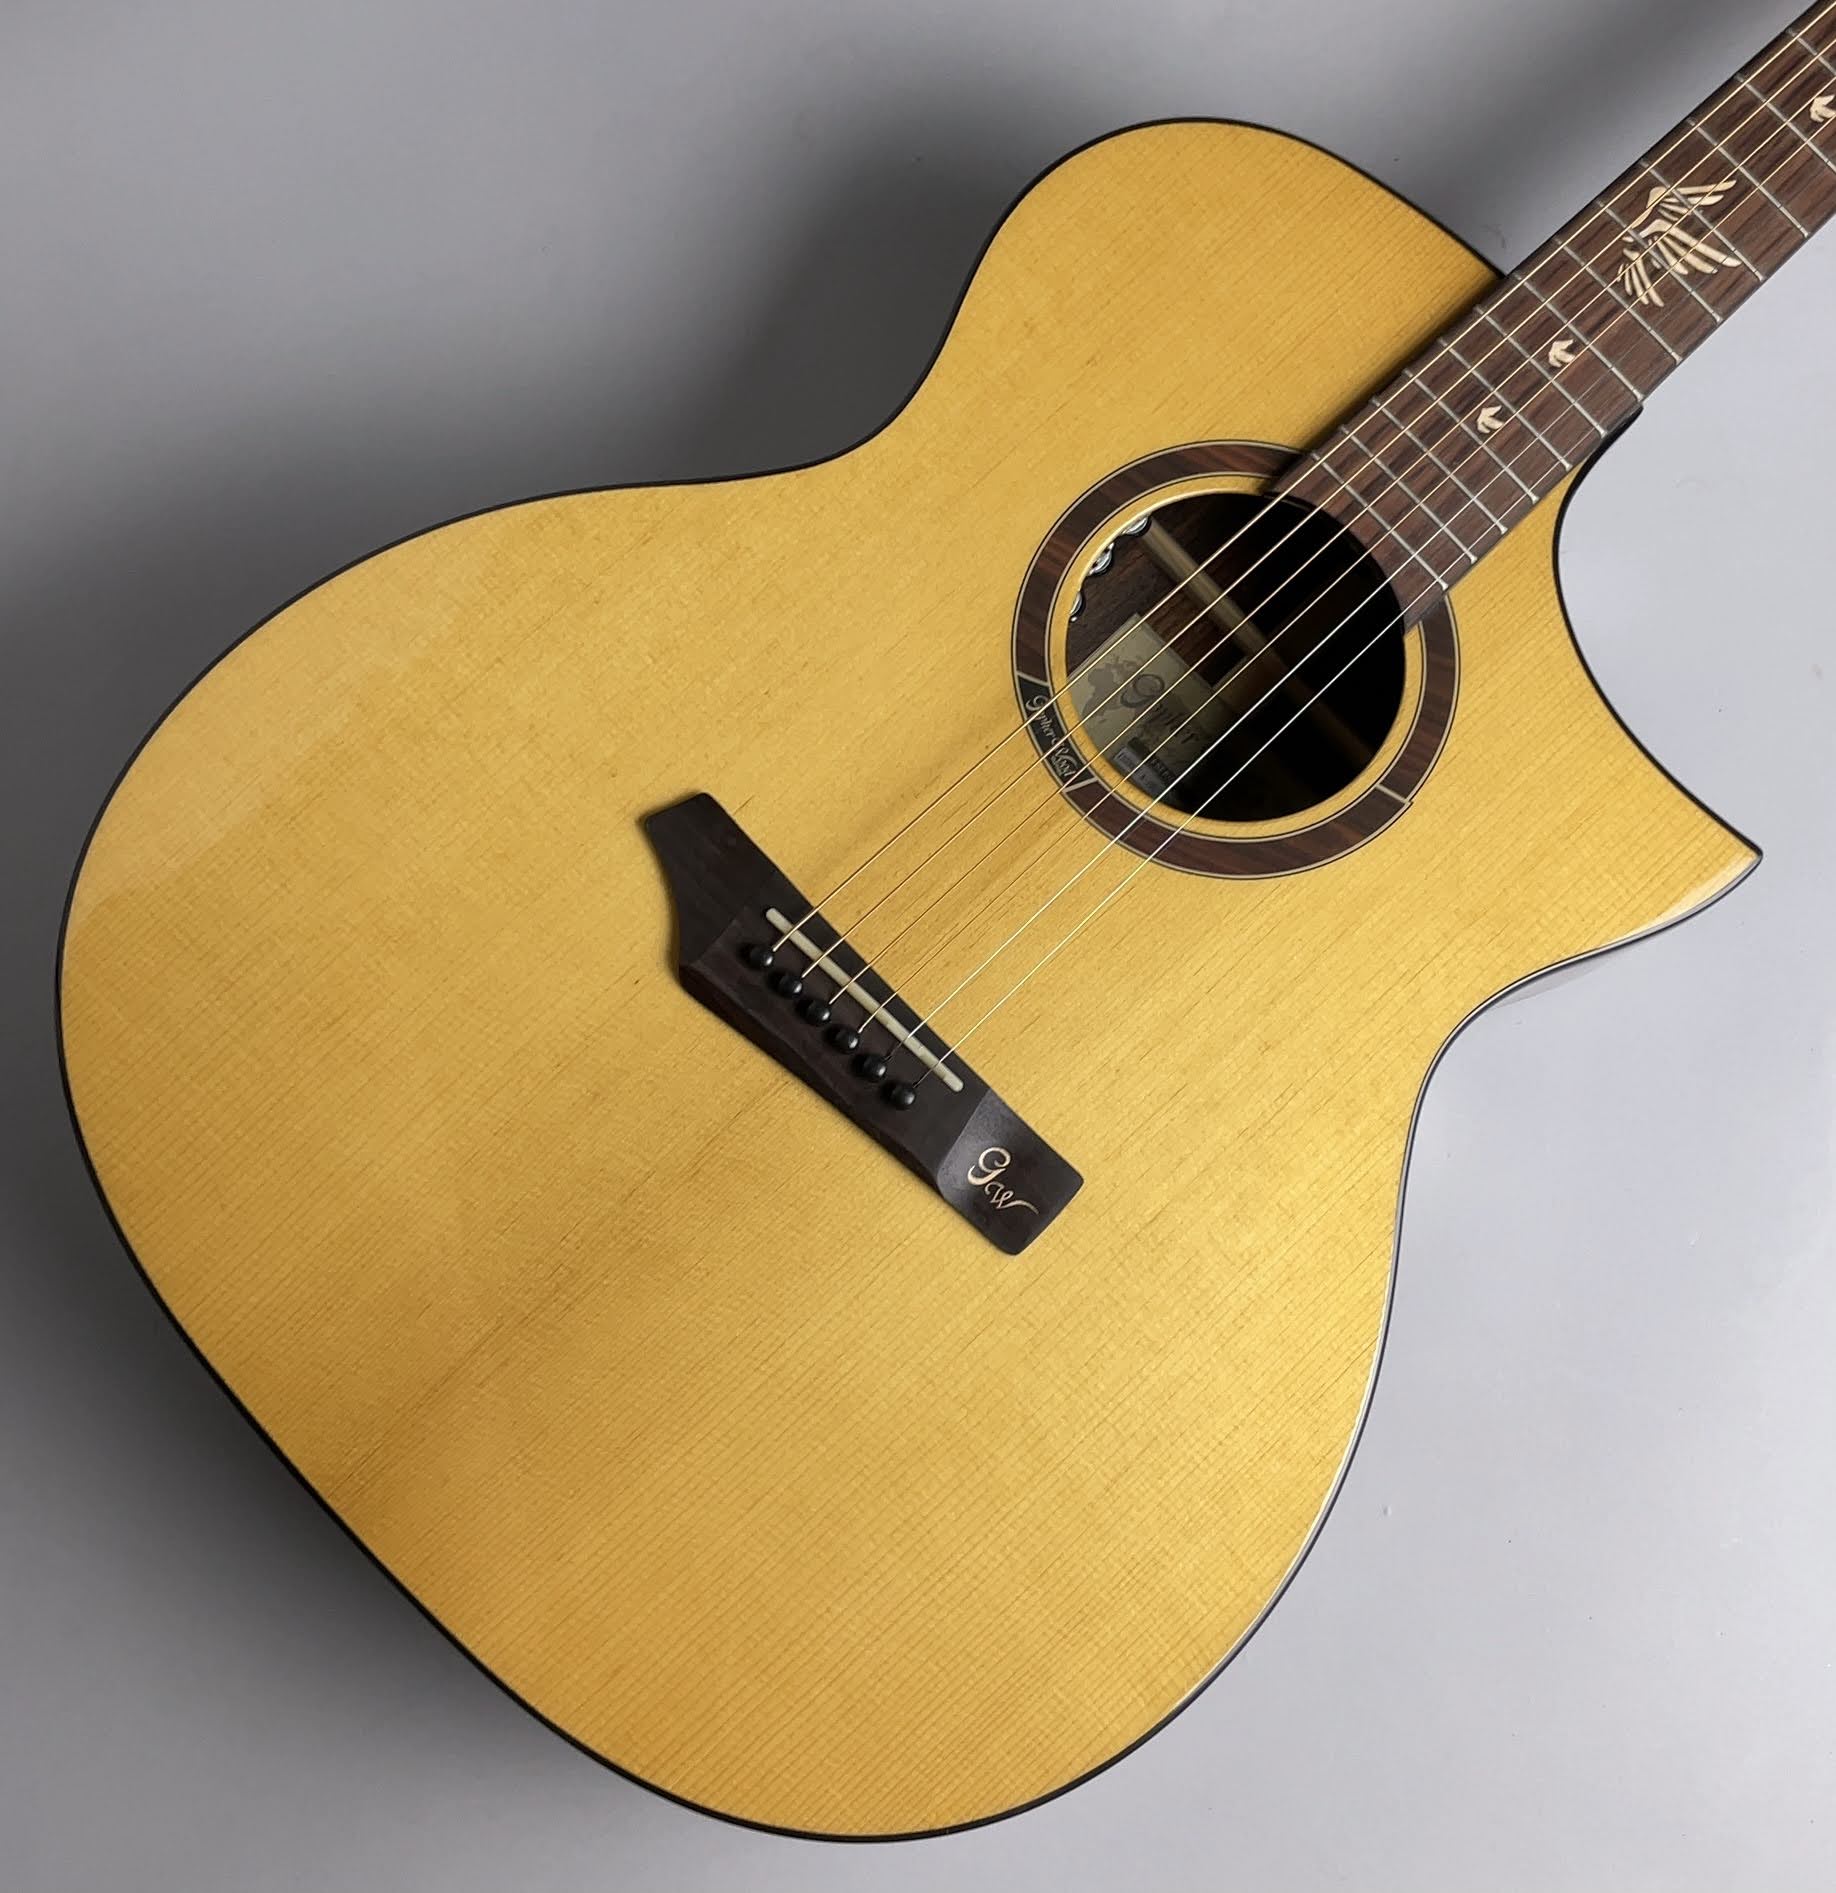 アコギ商品情報 | Gopherwood Guitars i320RCE-JP/Origin